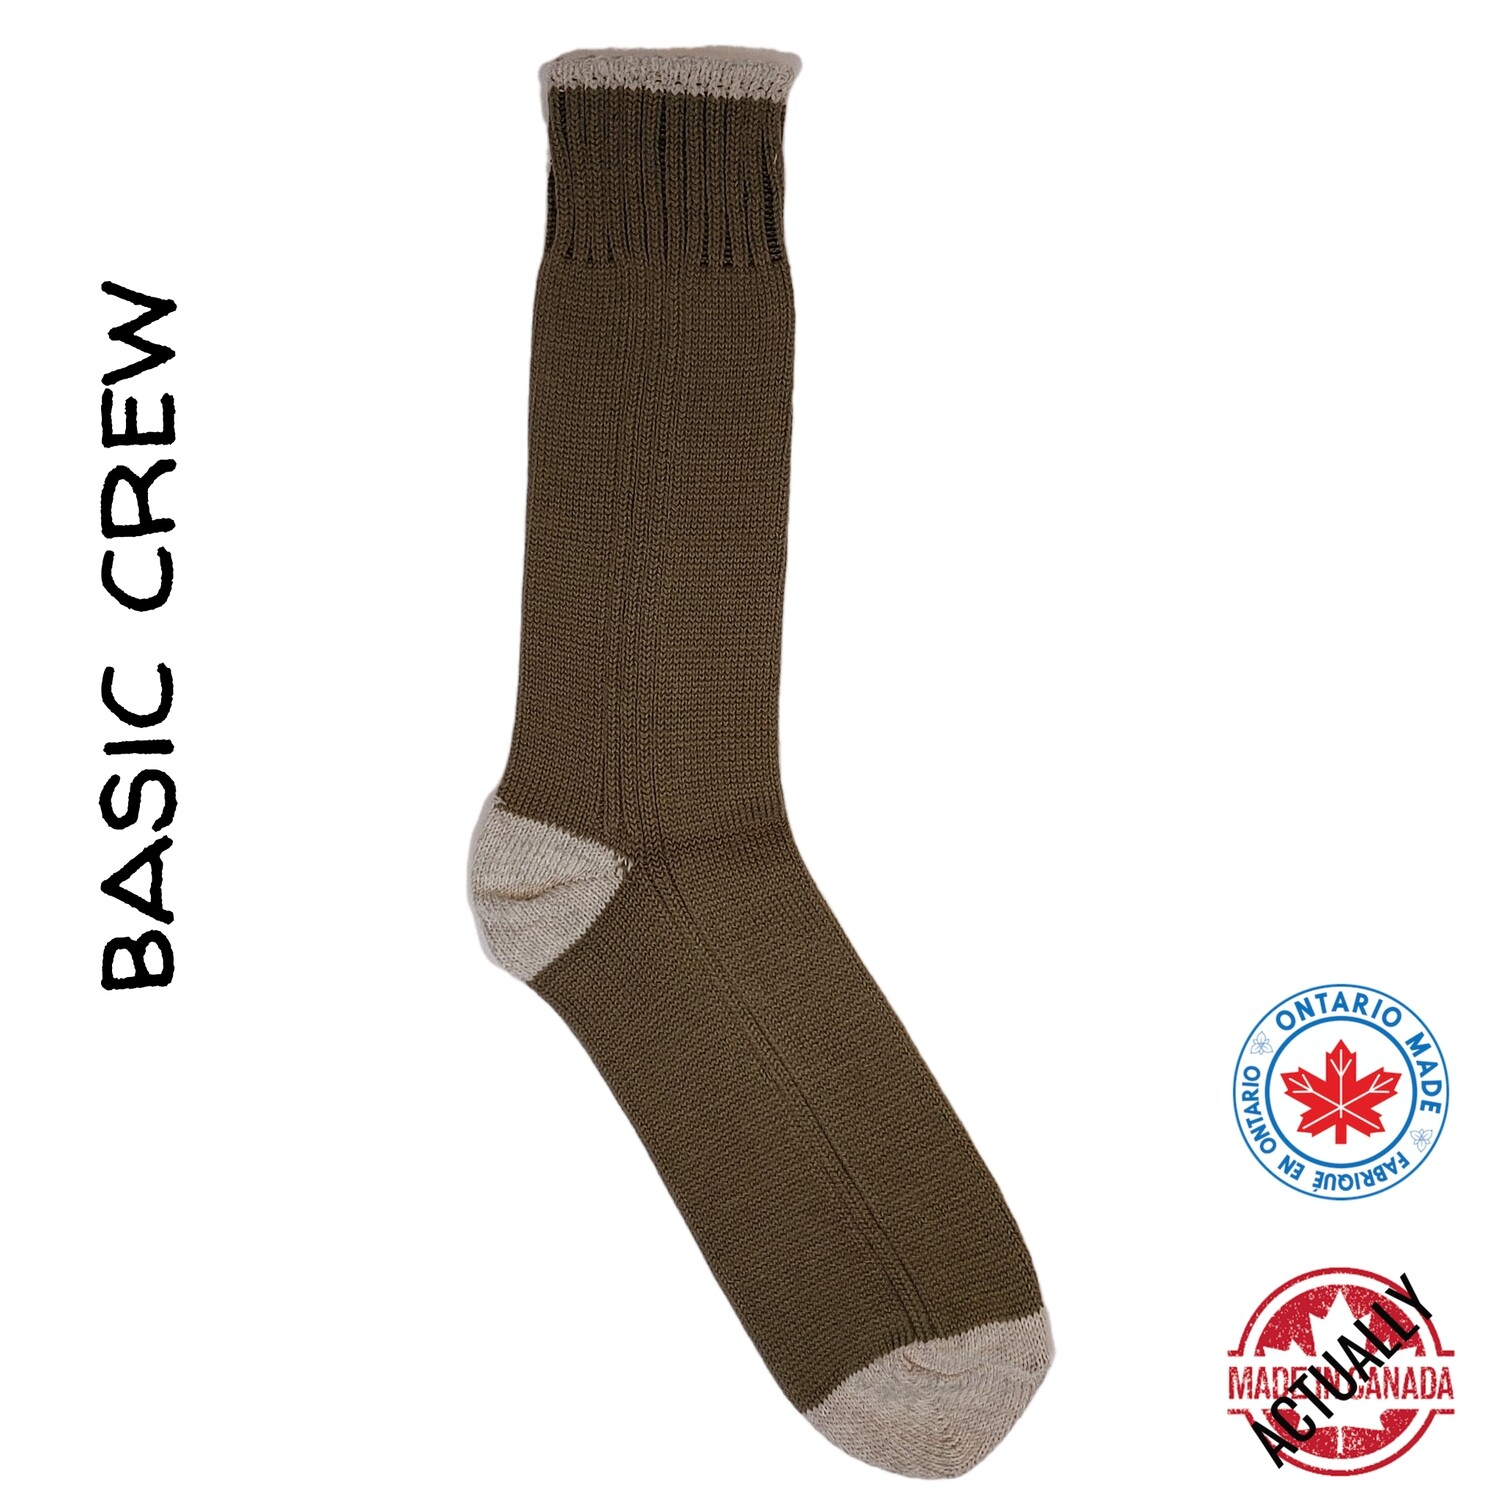 Basic Crew - Simple Rib Olive/Overcast Socks